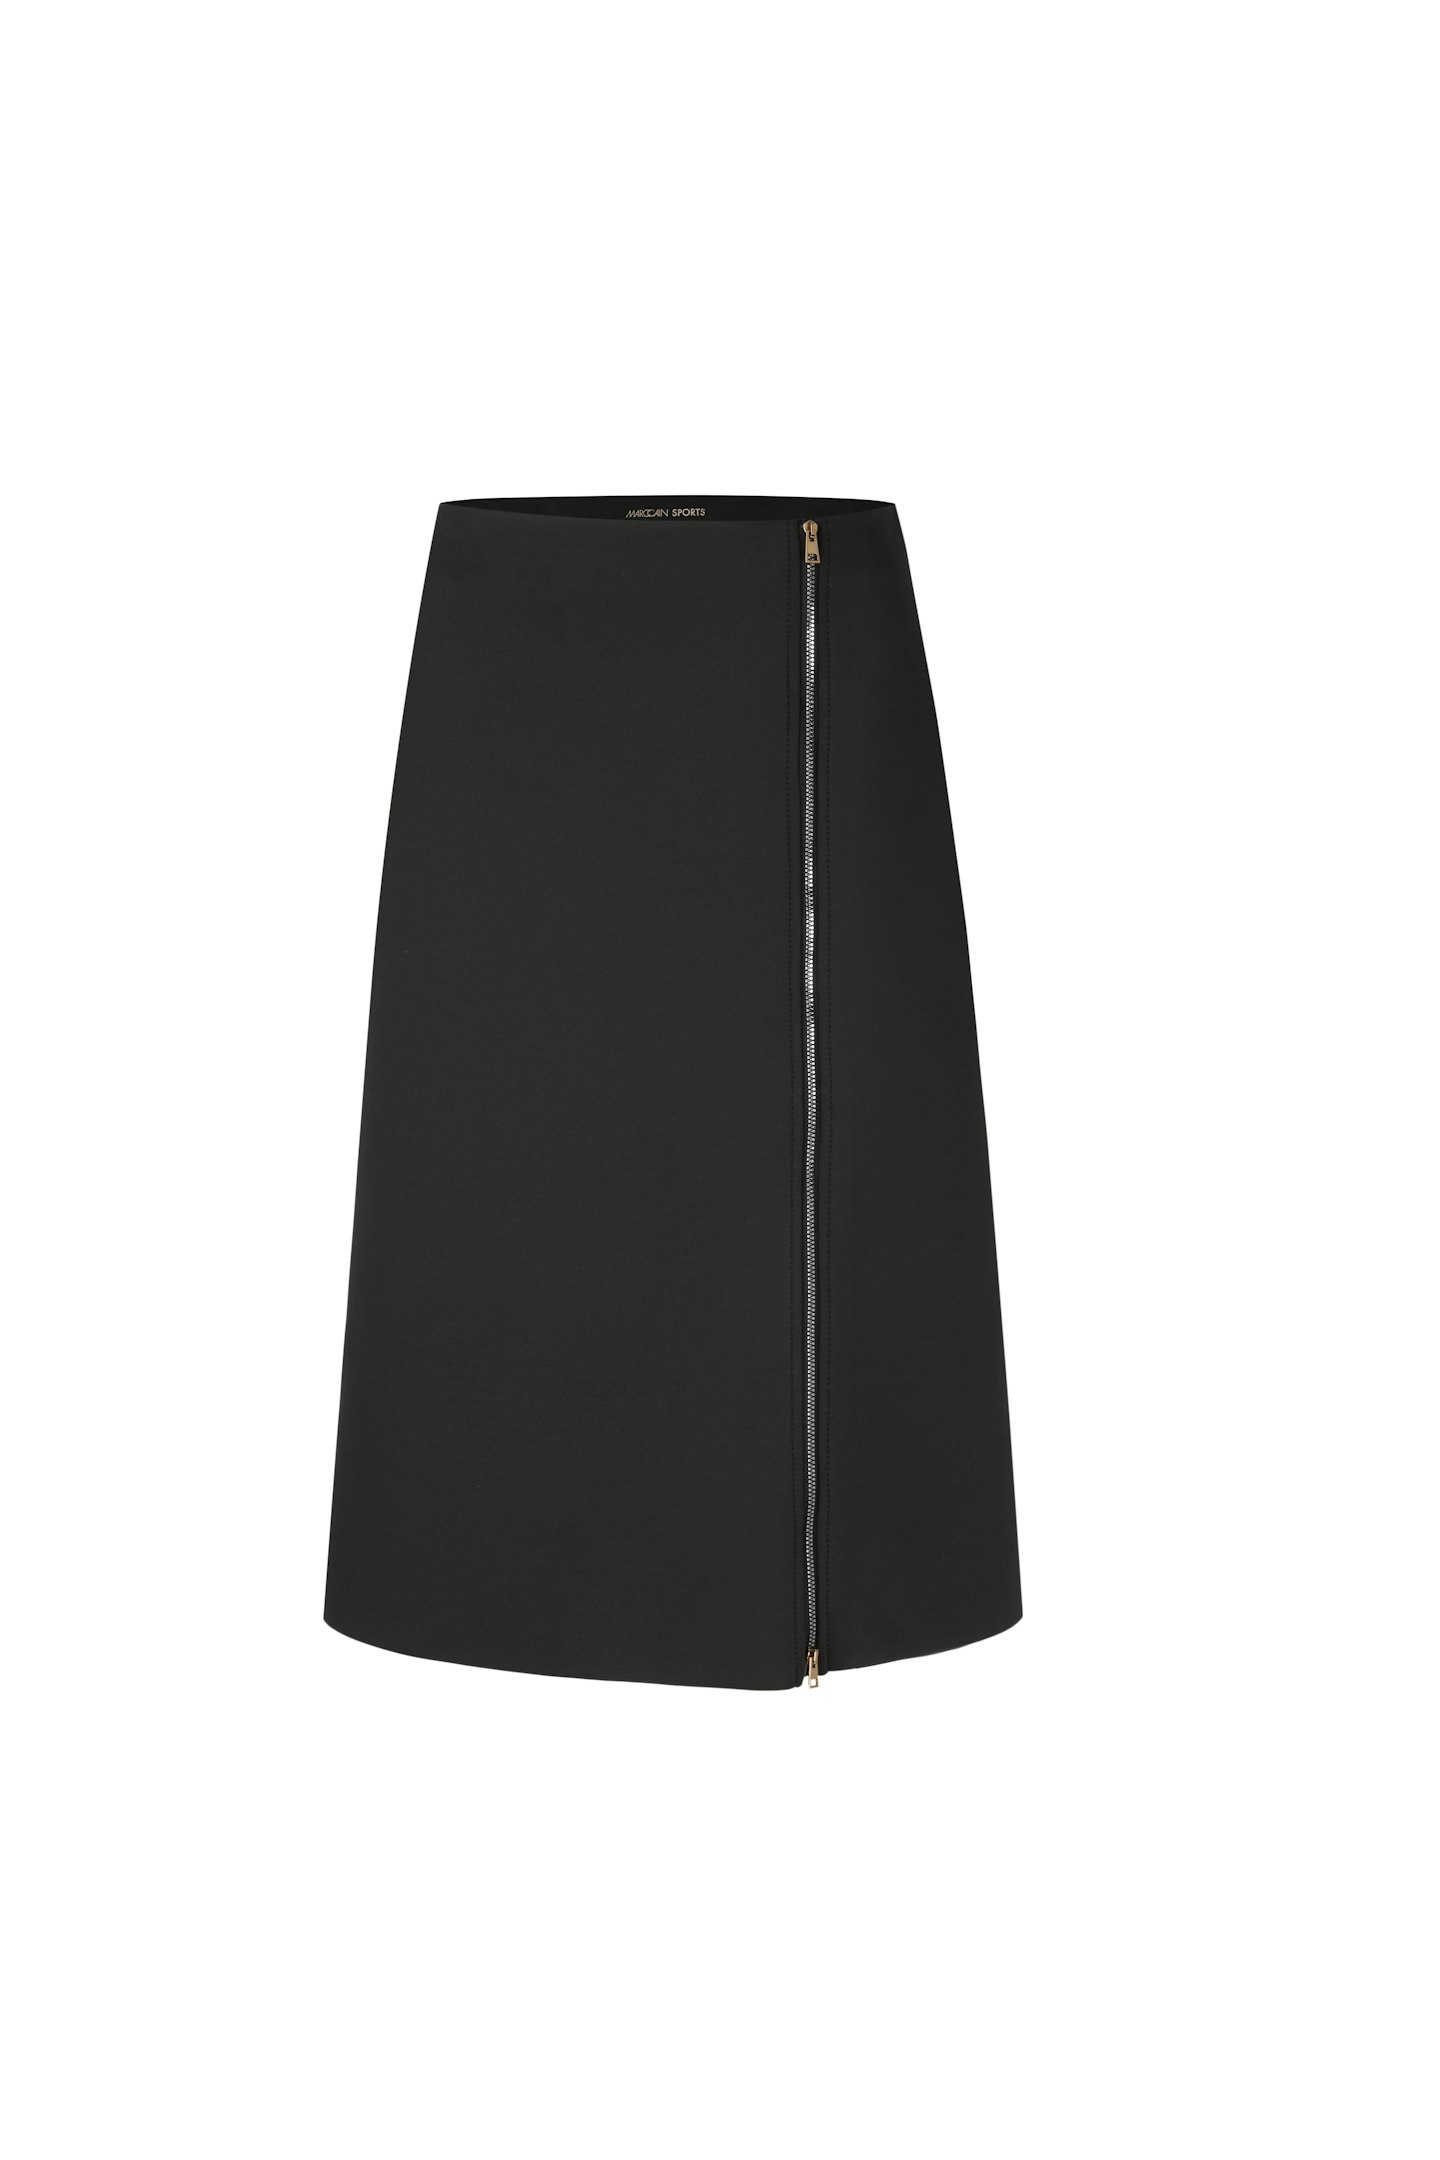 Marc Cain, Flared Skirt In Neoprene, £219